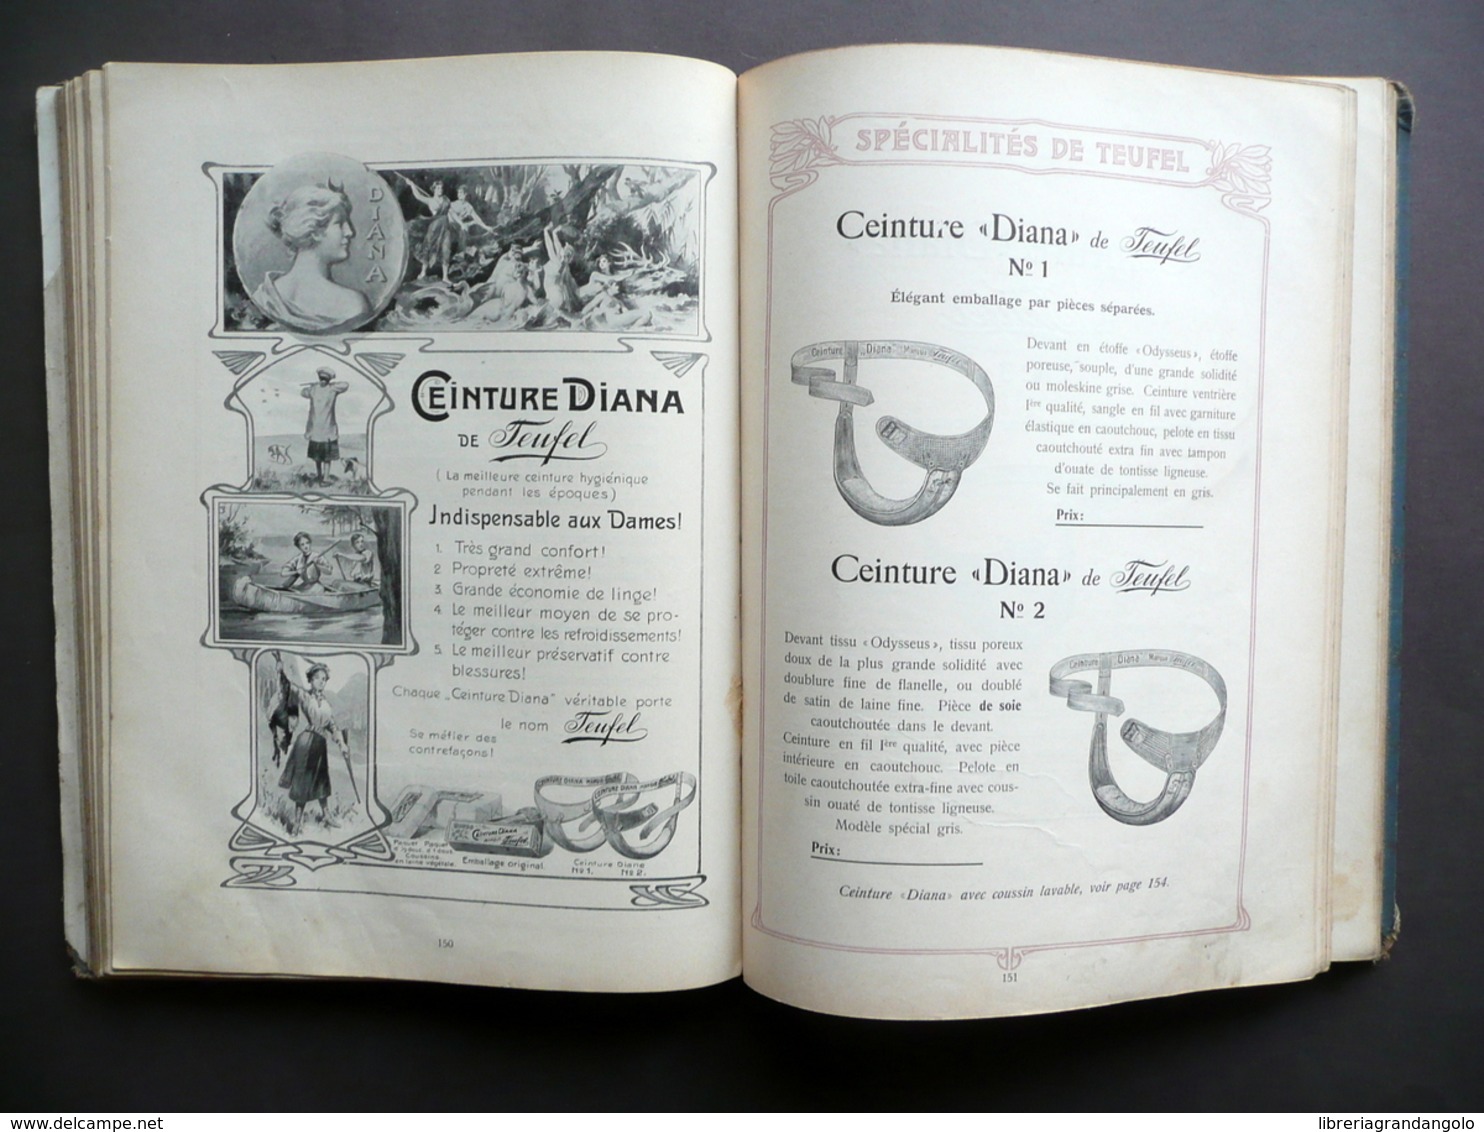 Specialites de Teufel Catalogue General Illustre 1908 Busti Corsetti Moda